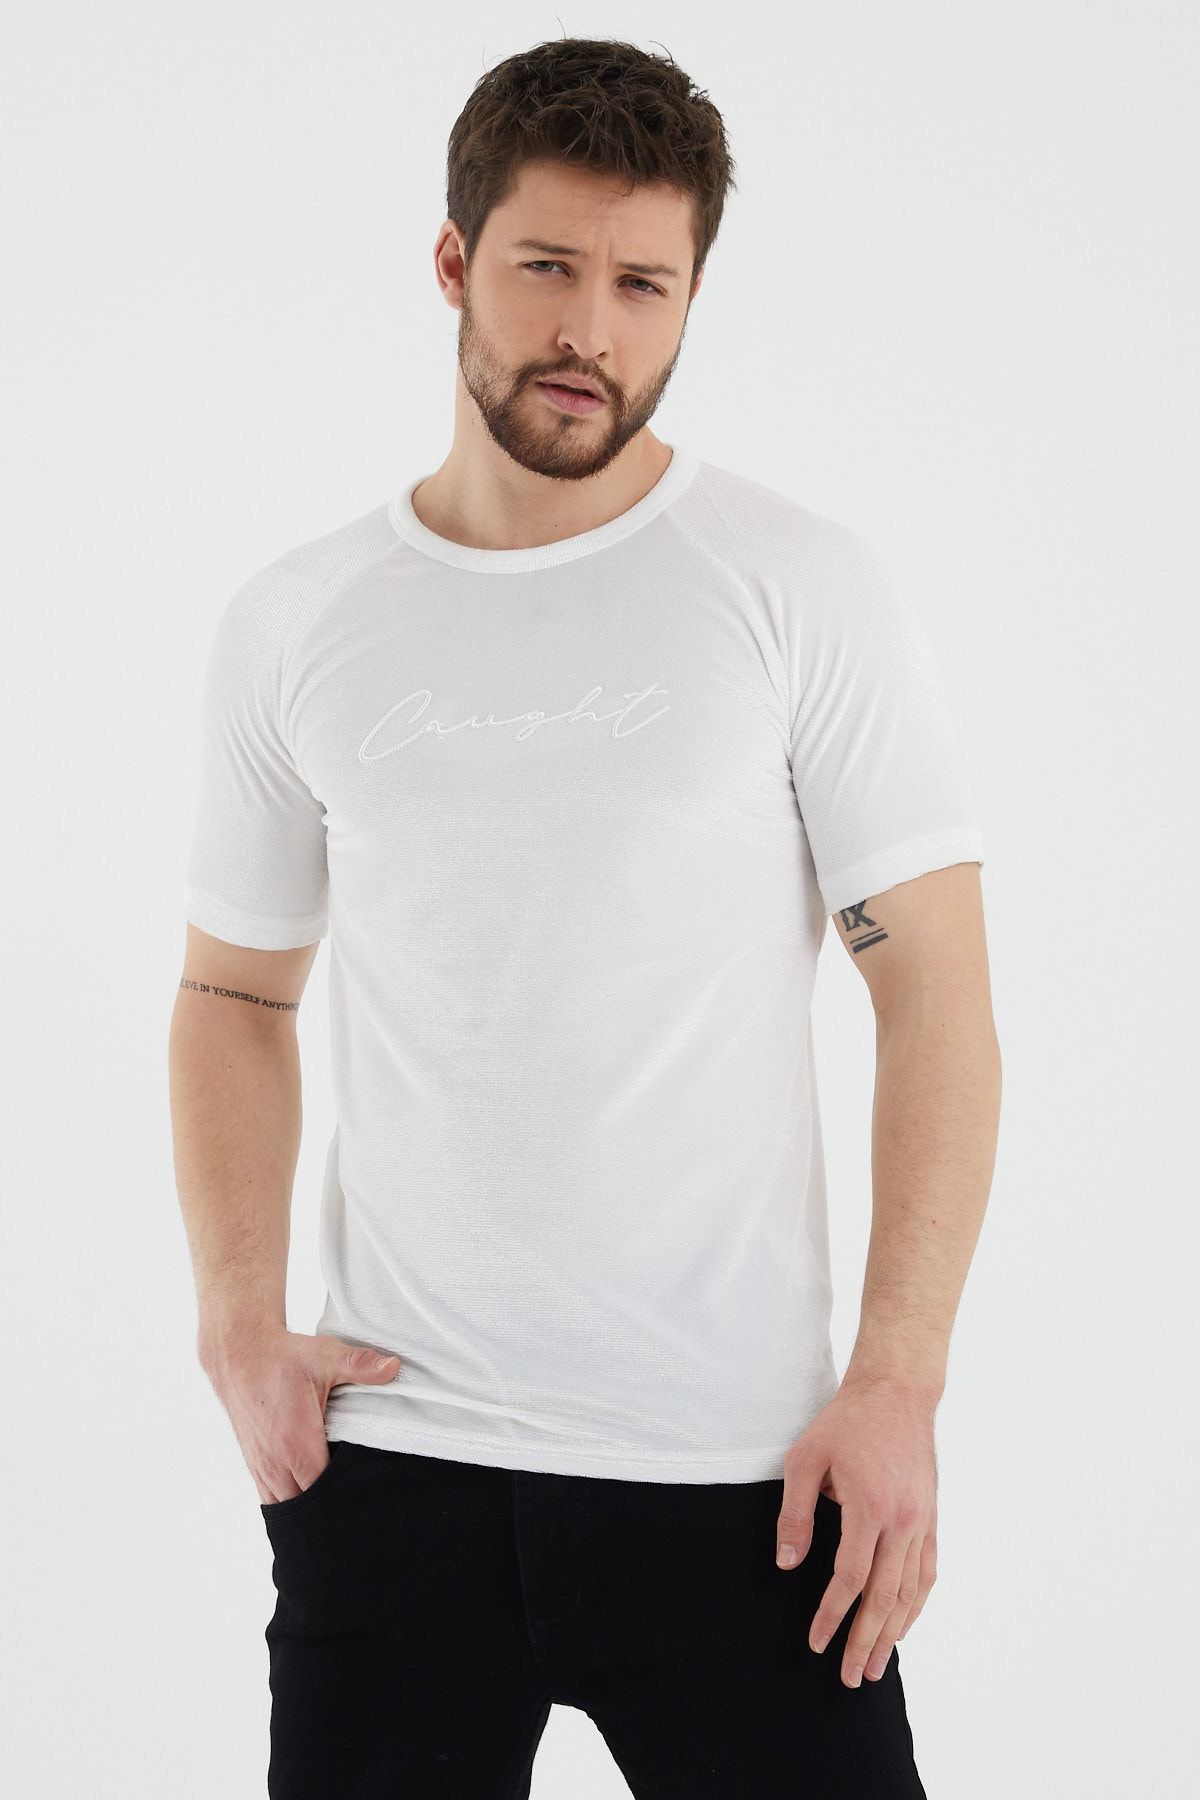 Tarz Cool Erkek Beyaz Slim Fit Kadife Triko T-shirt